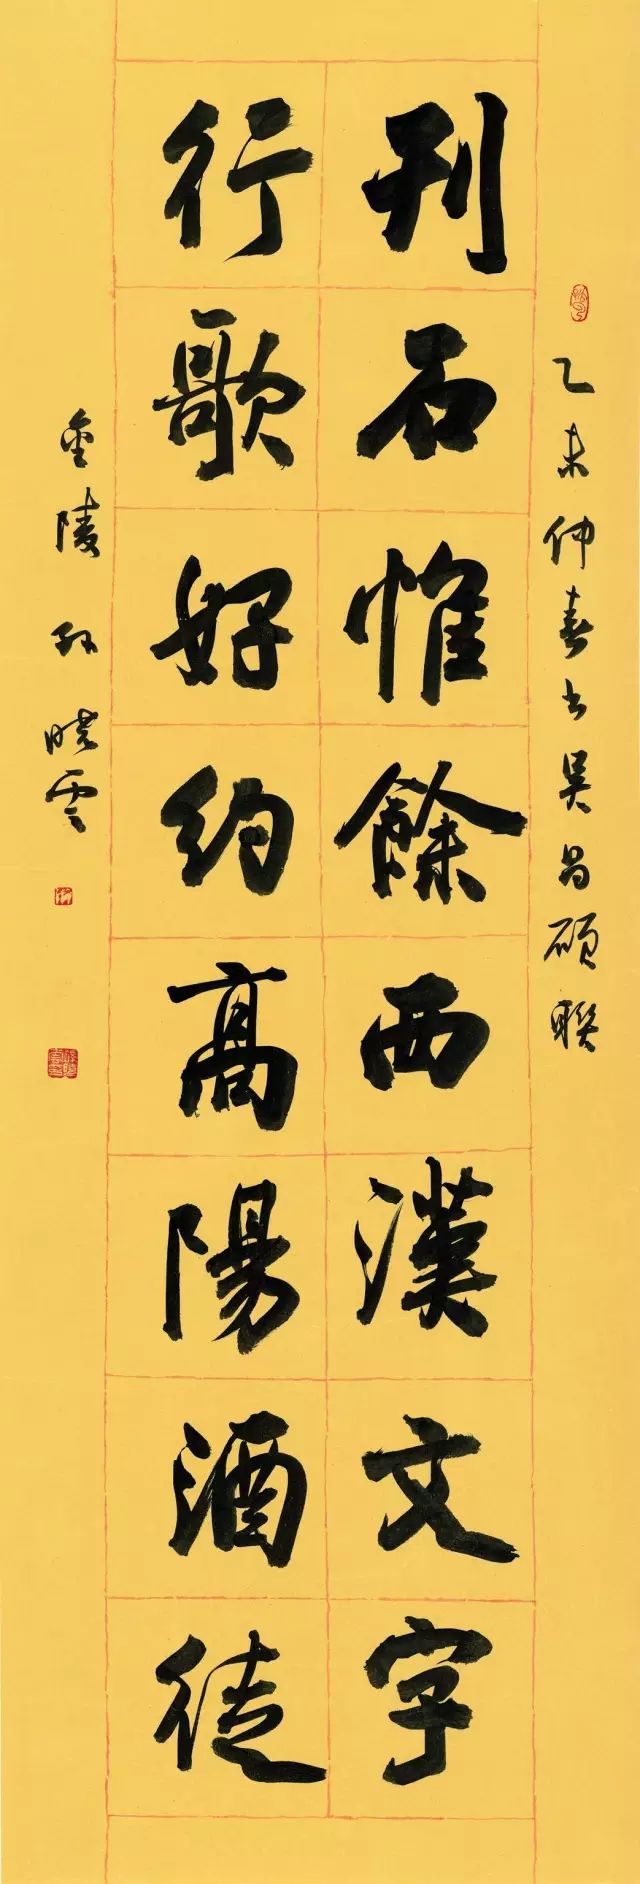 与古为新——孙晓云书法作品展将于11月23日在国家博物馆开幕